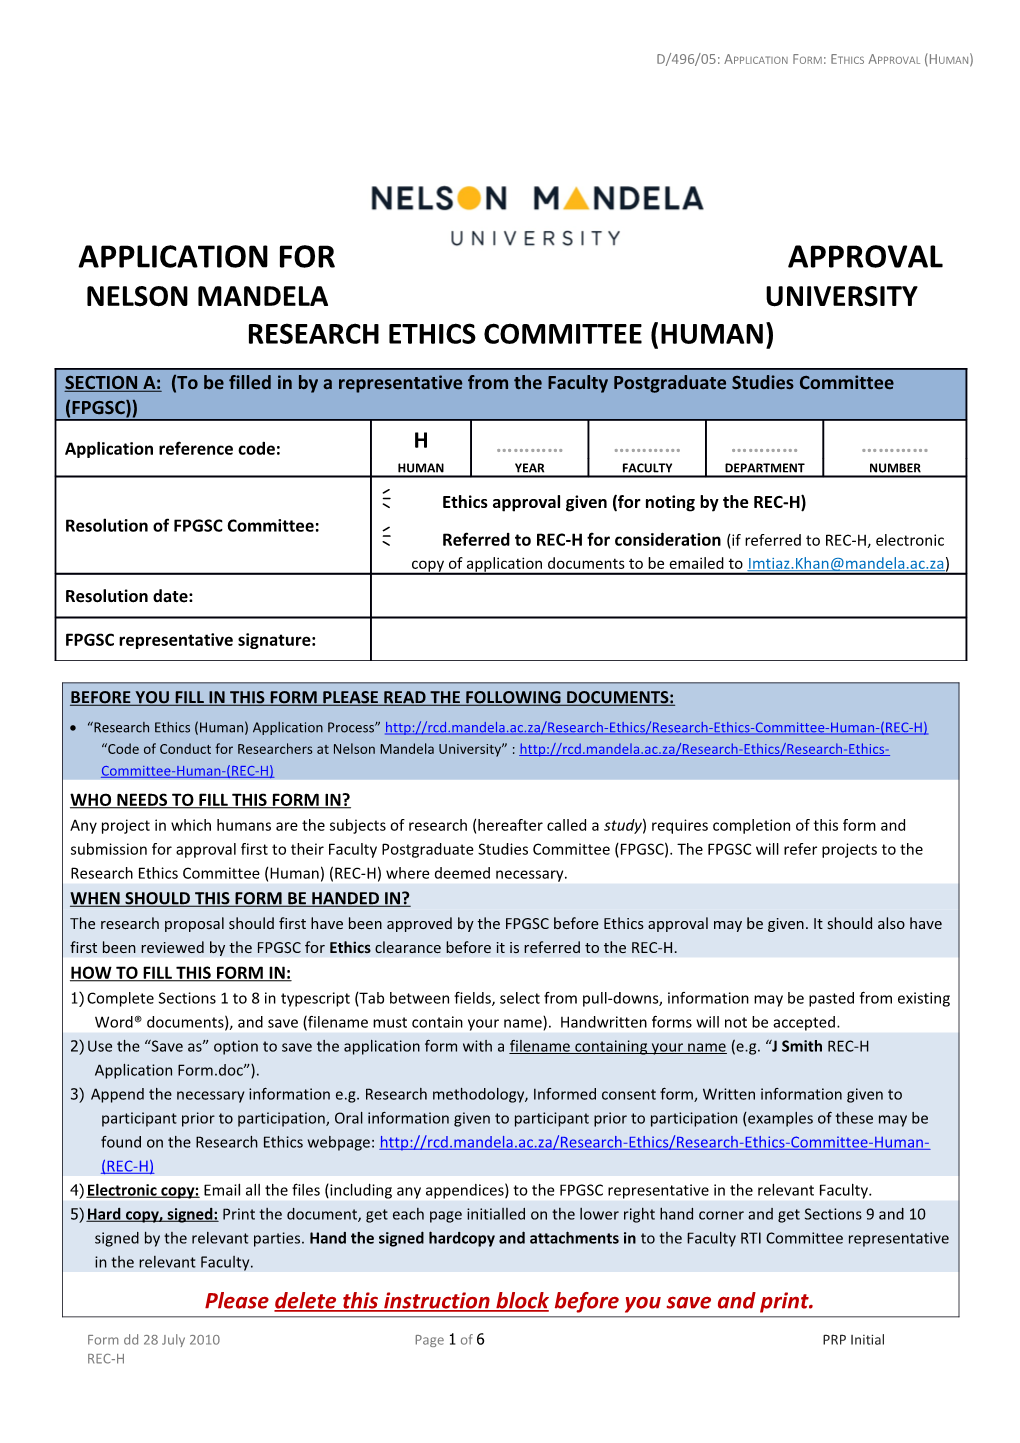 REC-H Application Form